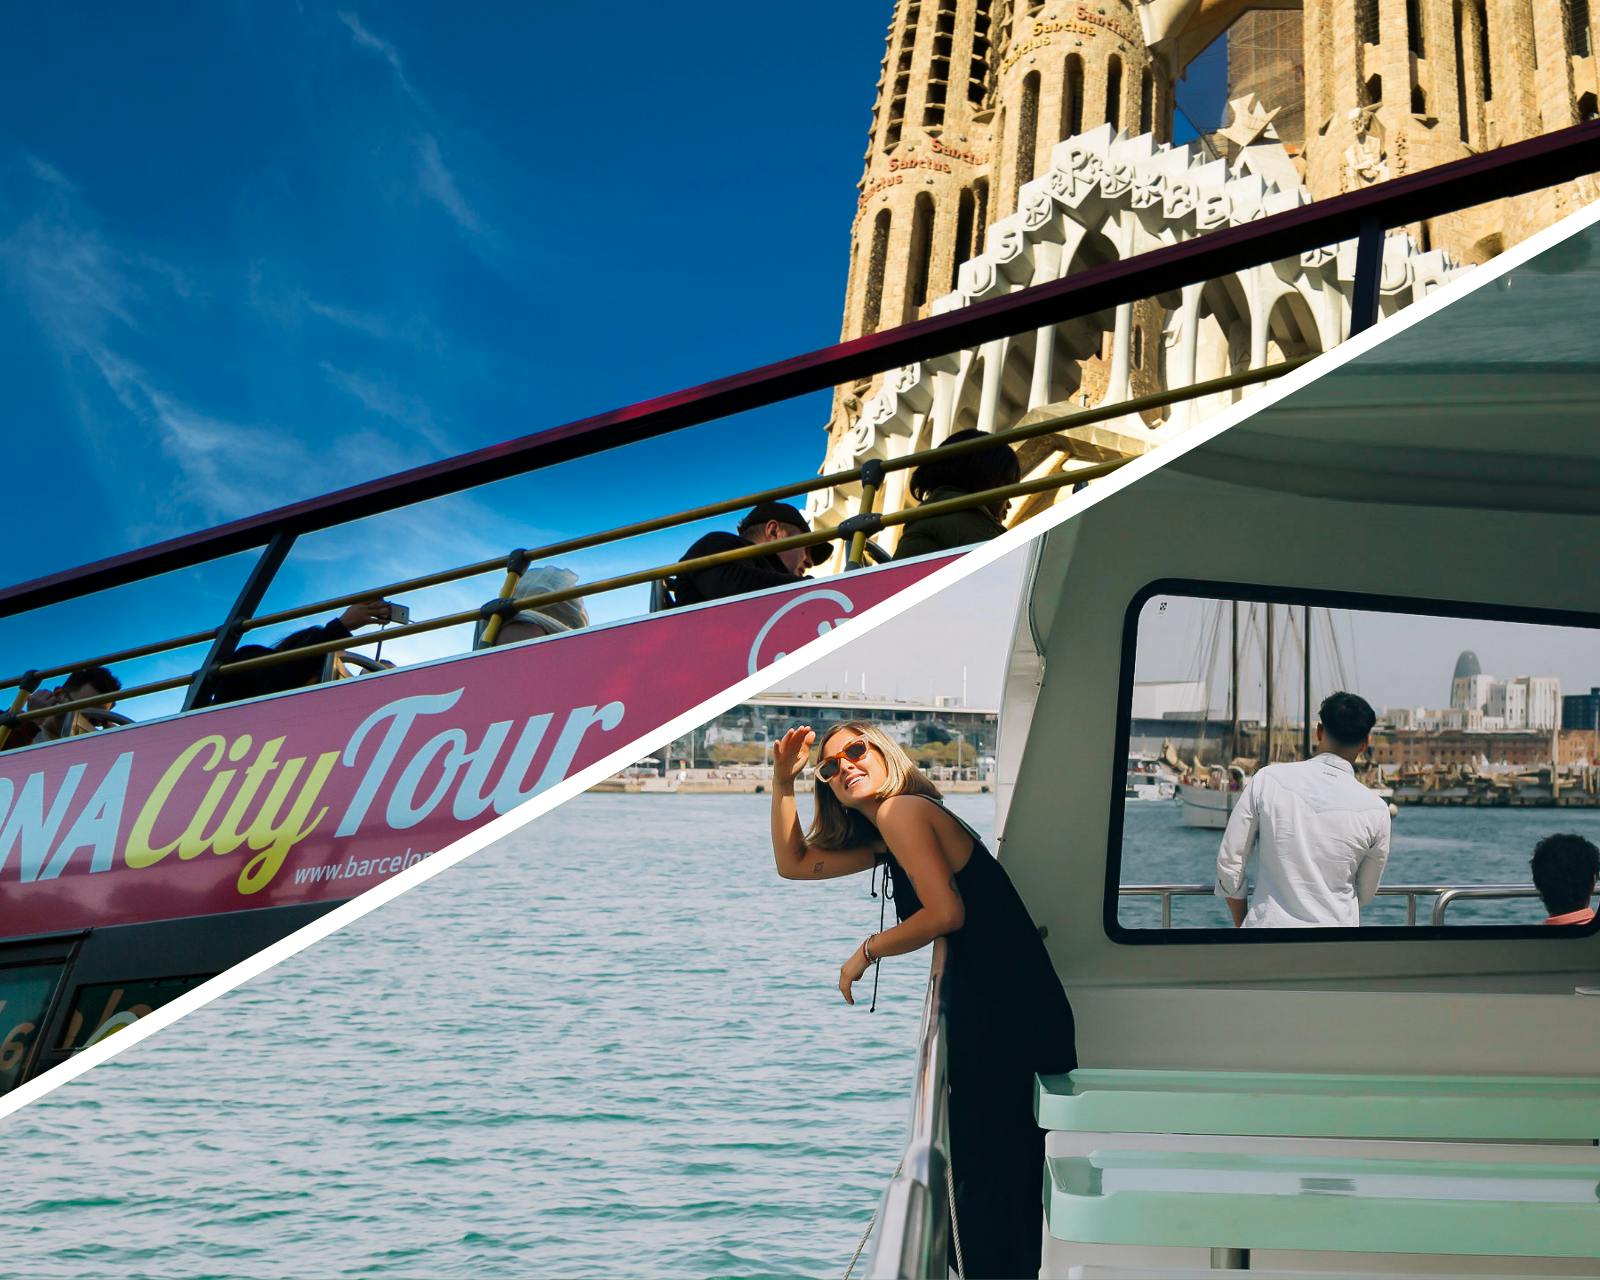 Wycieczka autobusowa typu hop-on hop-off po Barcelonie z rejsem ekologicznym katamaranem